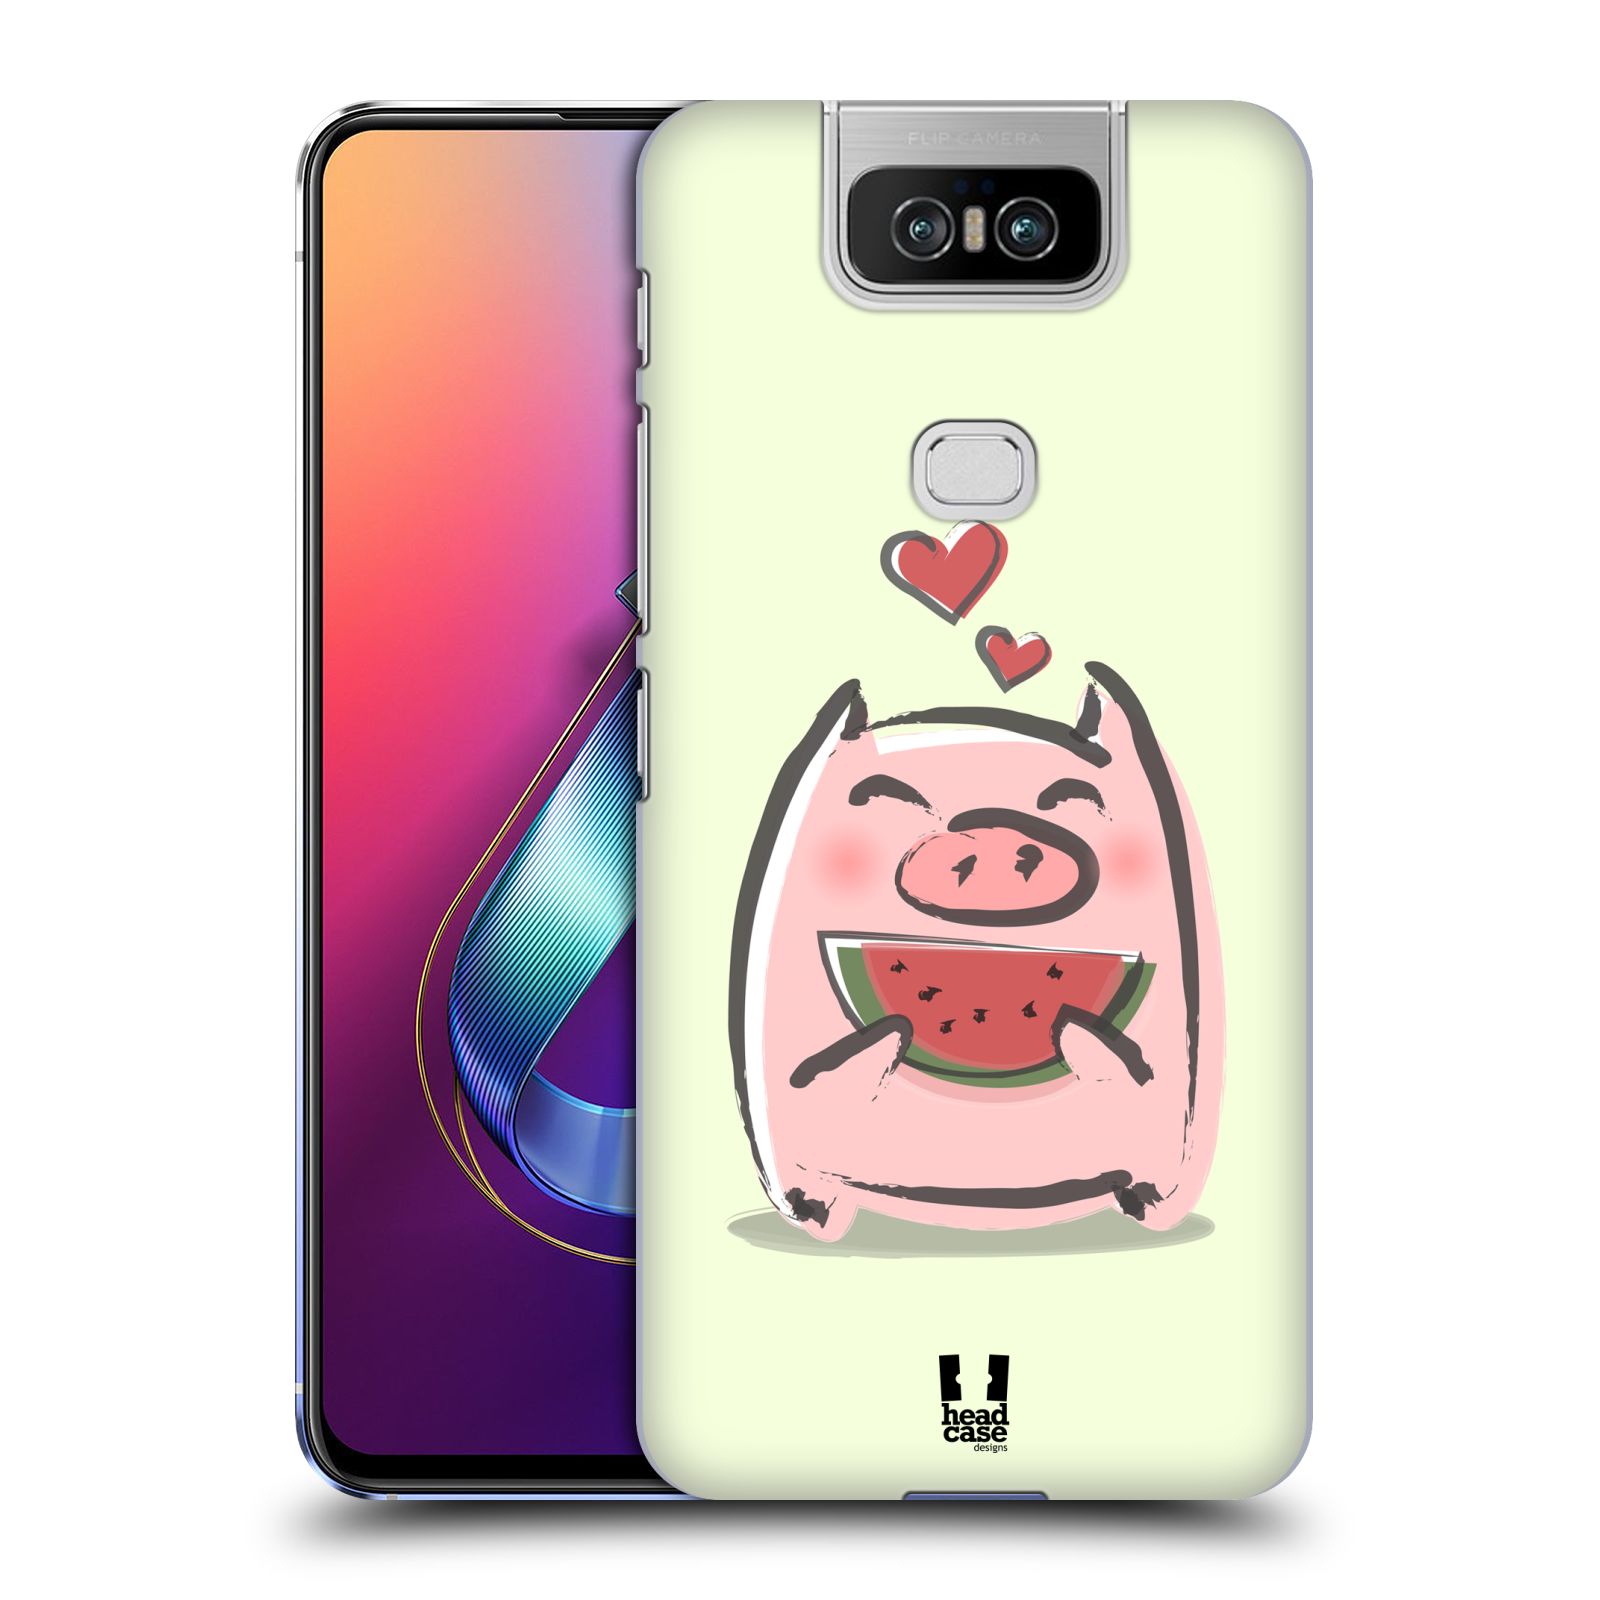 Pouzdro na mobil Asus Zenfone 6 ZS630KL - HEAD CASE - vzor roztomilé růžové prasátko vodní meloun